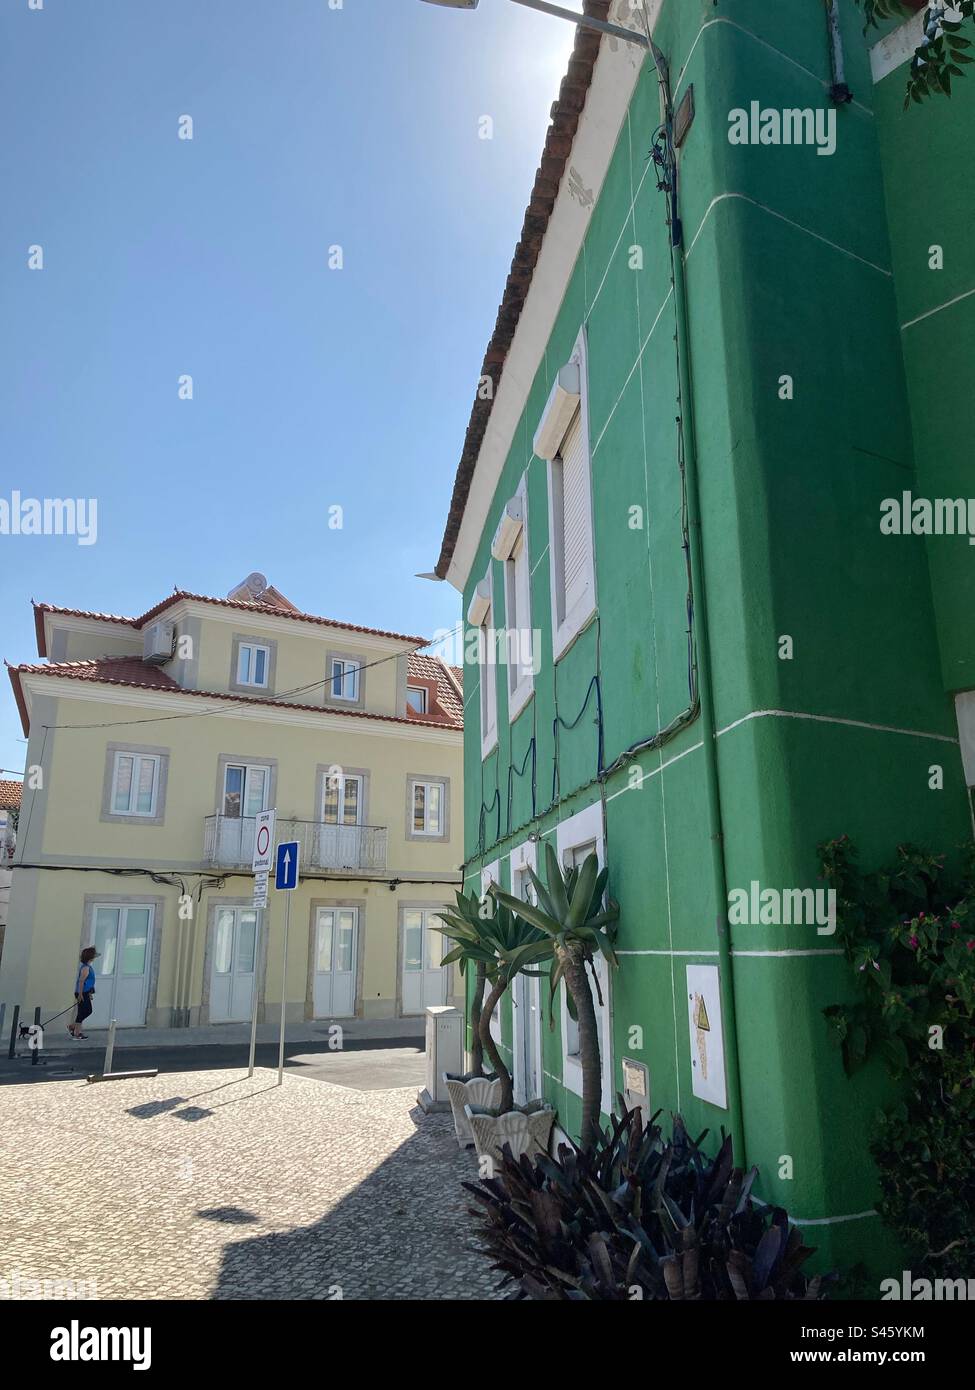 Vue de maisons portugaises typiques dans la région sud du pays. Maison traditionnelle verte et jaune pâle. Banque D'Images